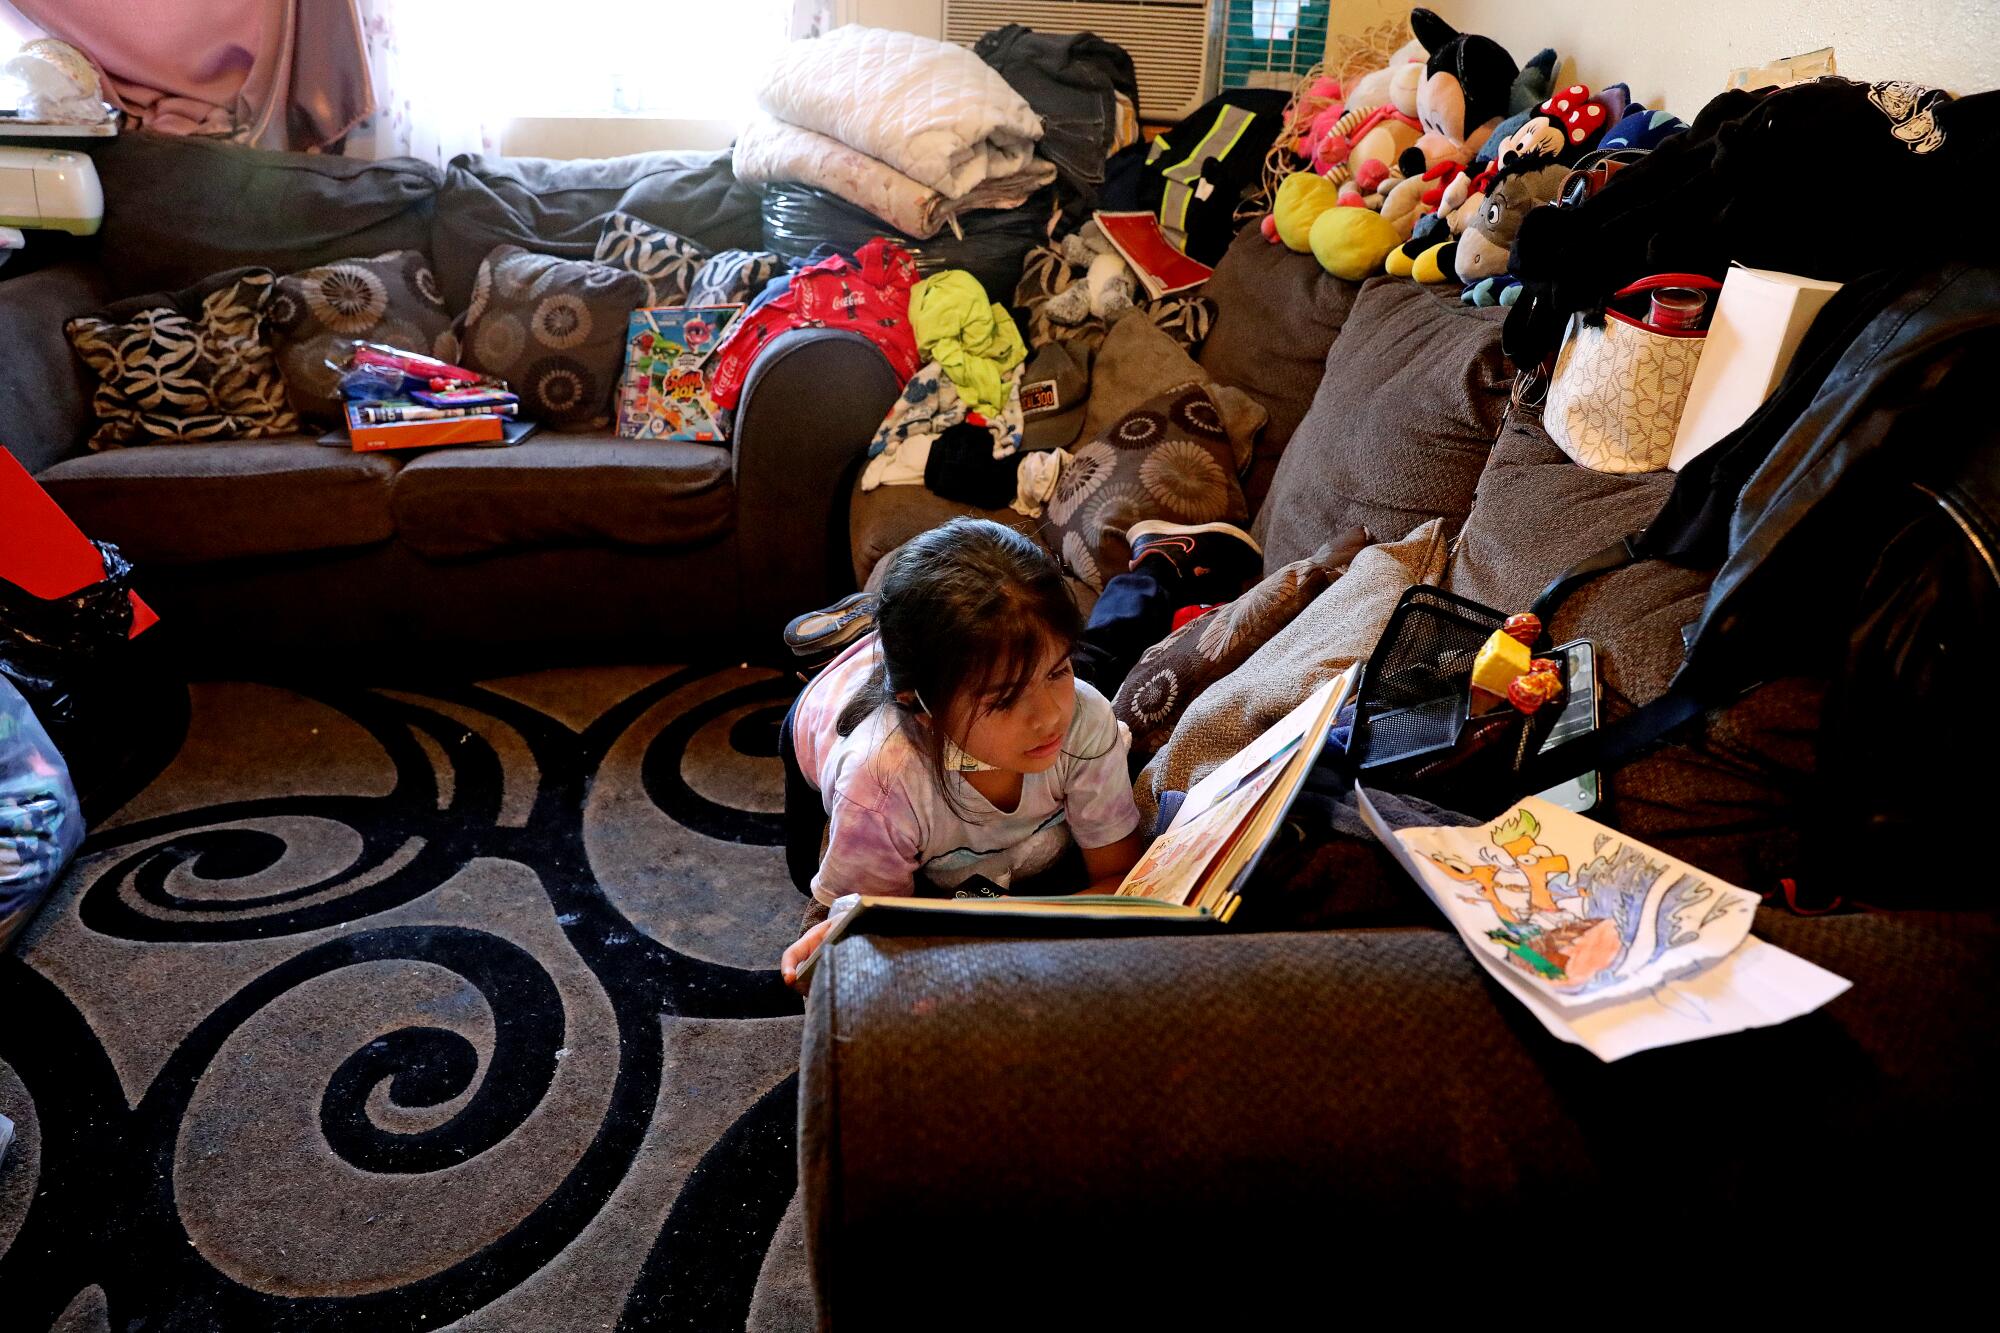 Yaretzi Galicia, de 7 aos, lee en la sala de estar del departamento de una habitación de la familia en Pico-Union.